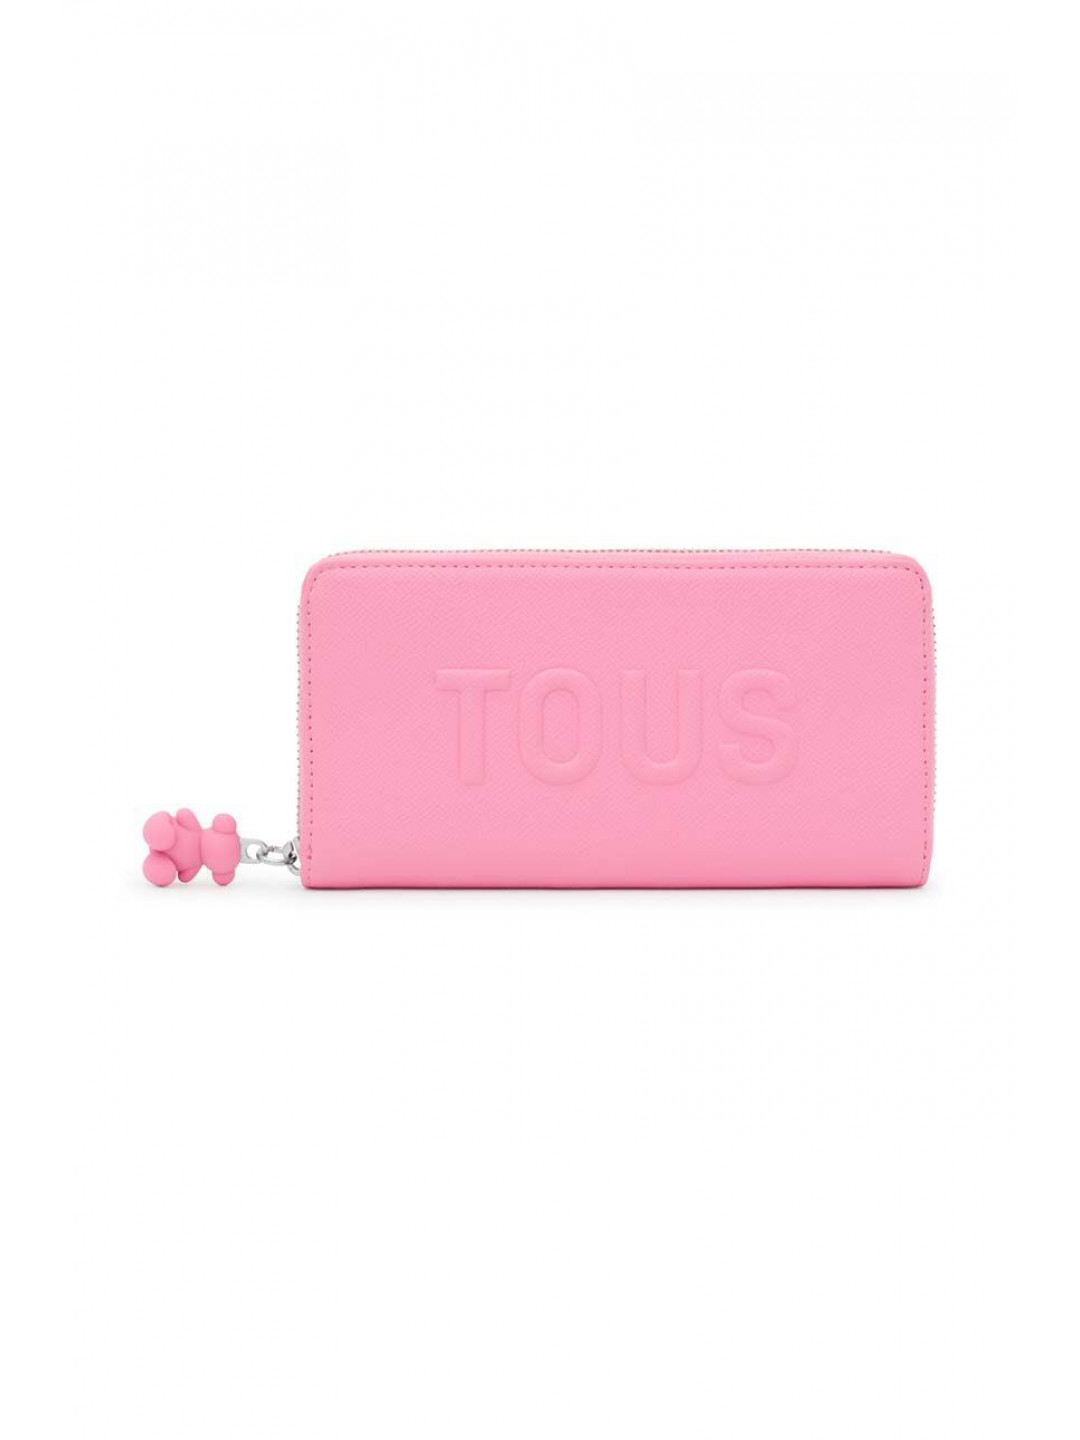 Peněženka Tous růžová barva